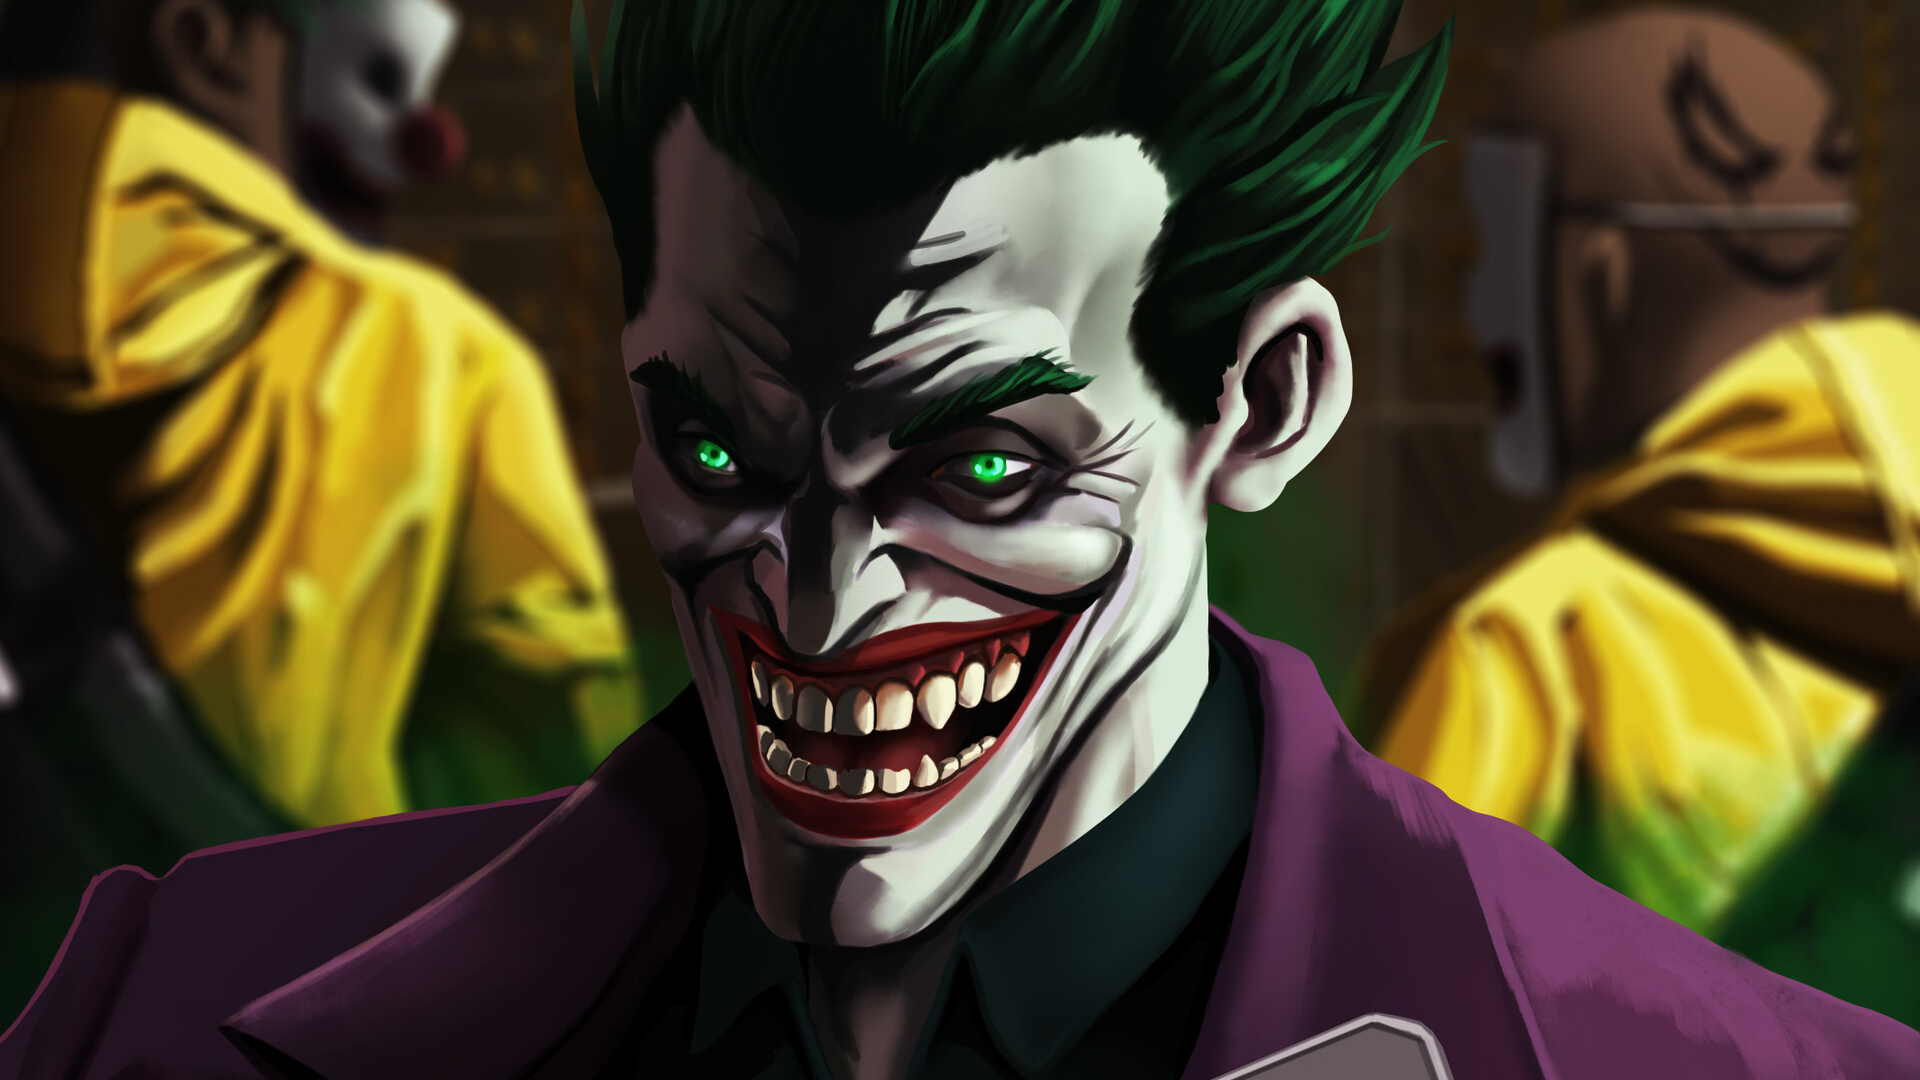 An Evil Joker Laugh Wallpaper, HD Superheroes 4K ...